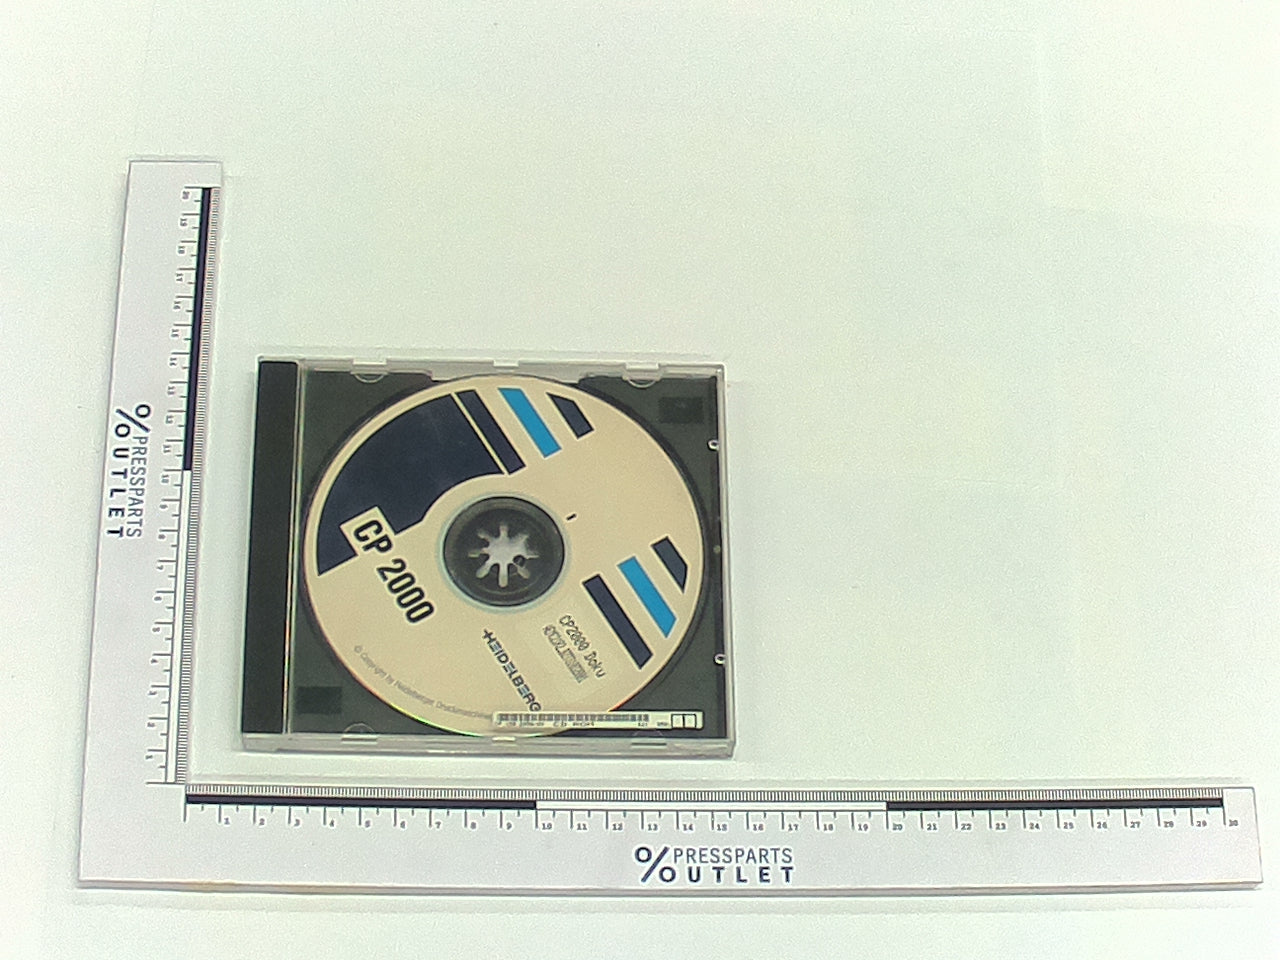 CD-ROM CD-ROM Programm - CP.150.2950/09 - CD-ROM CD-ROM Programm